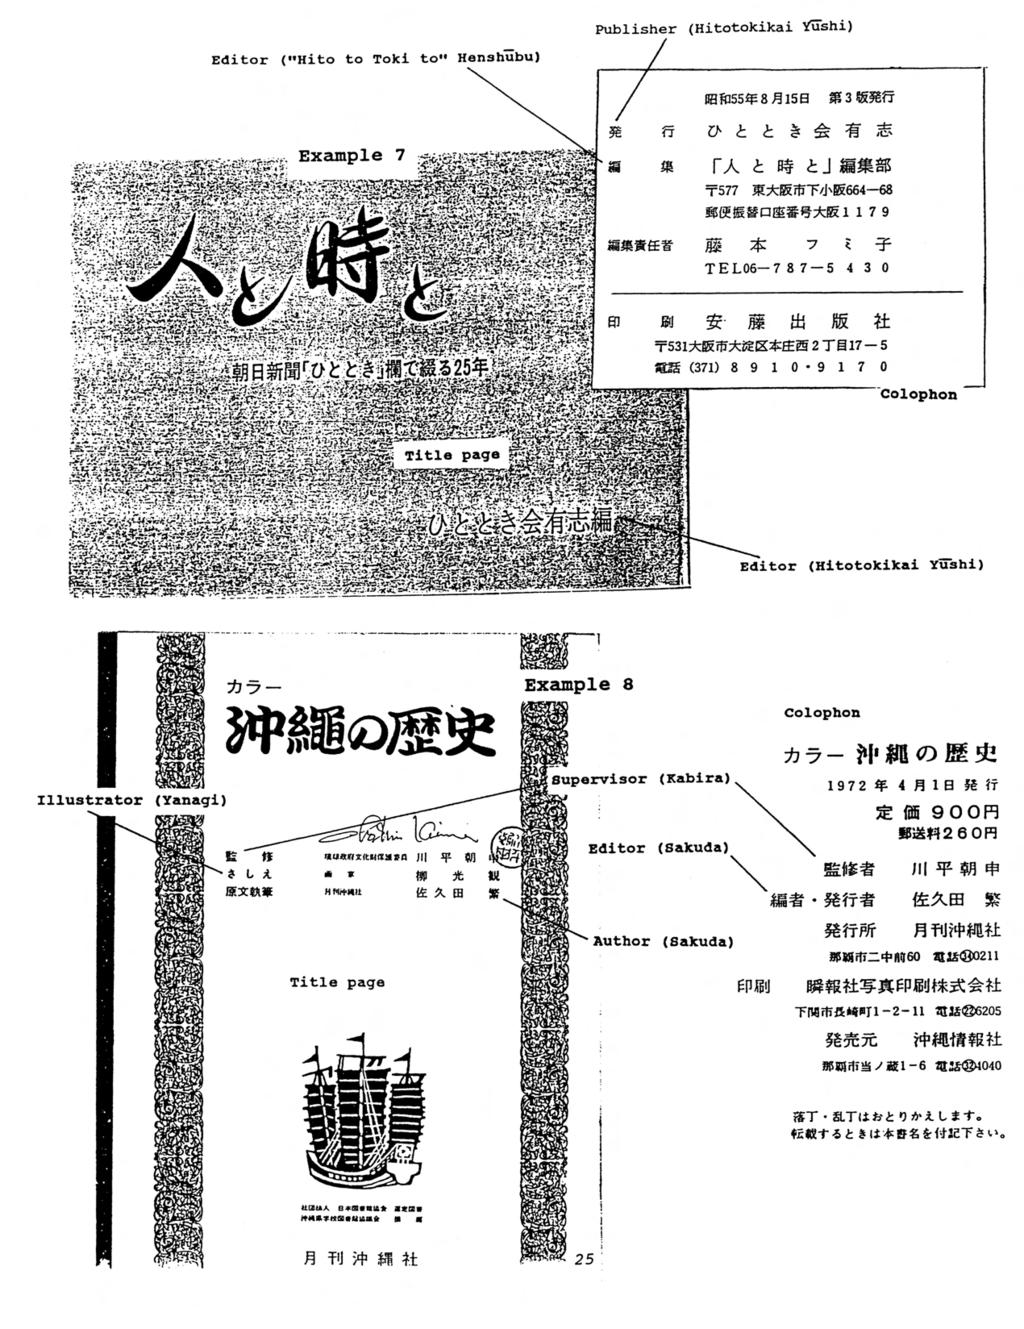 Publisher (Hitotokikai Yushi) Editor ("Hito to Toki to" Henshubu) Kfil55$ 8El5B Sl3«S3gfr T I ^ I I T577 B^E7rF/.